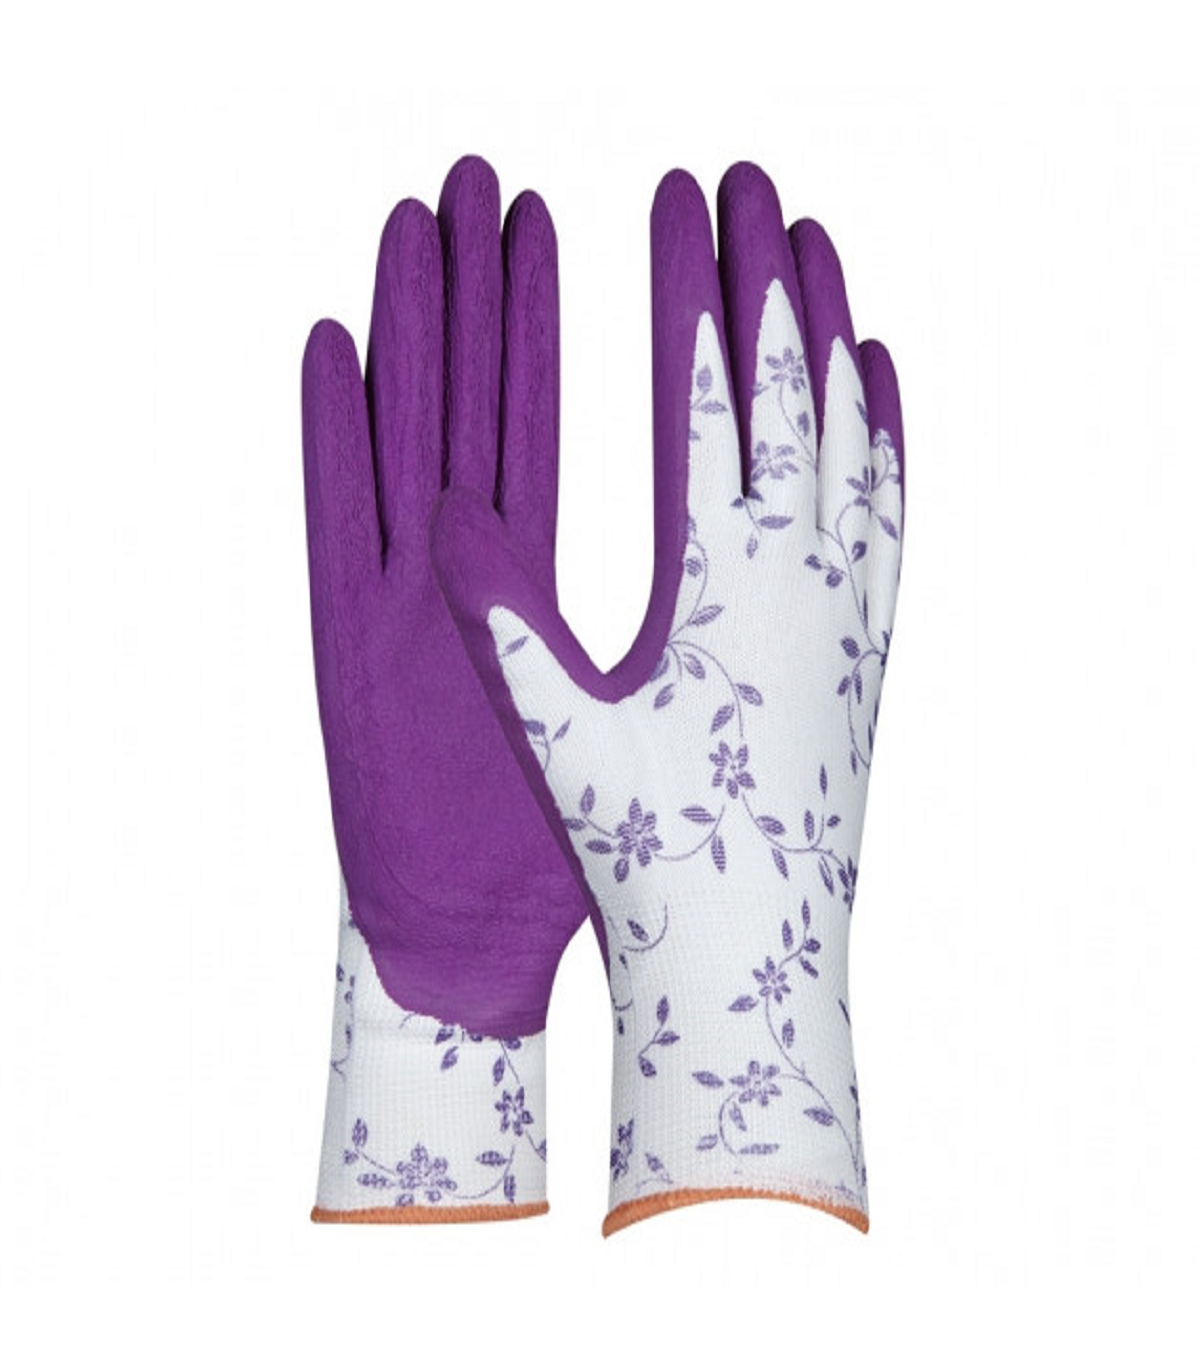 Pracovné rukavice dámske fialové - veľkosť 7 - Flower - 1 pár